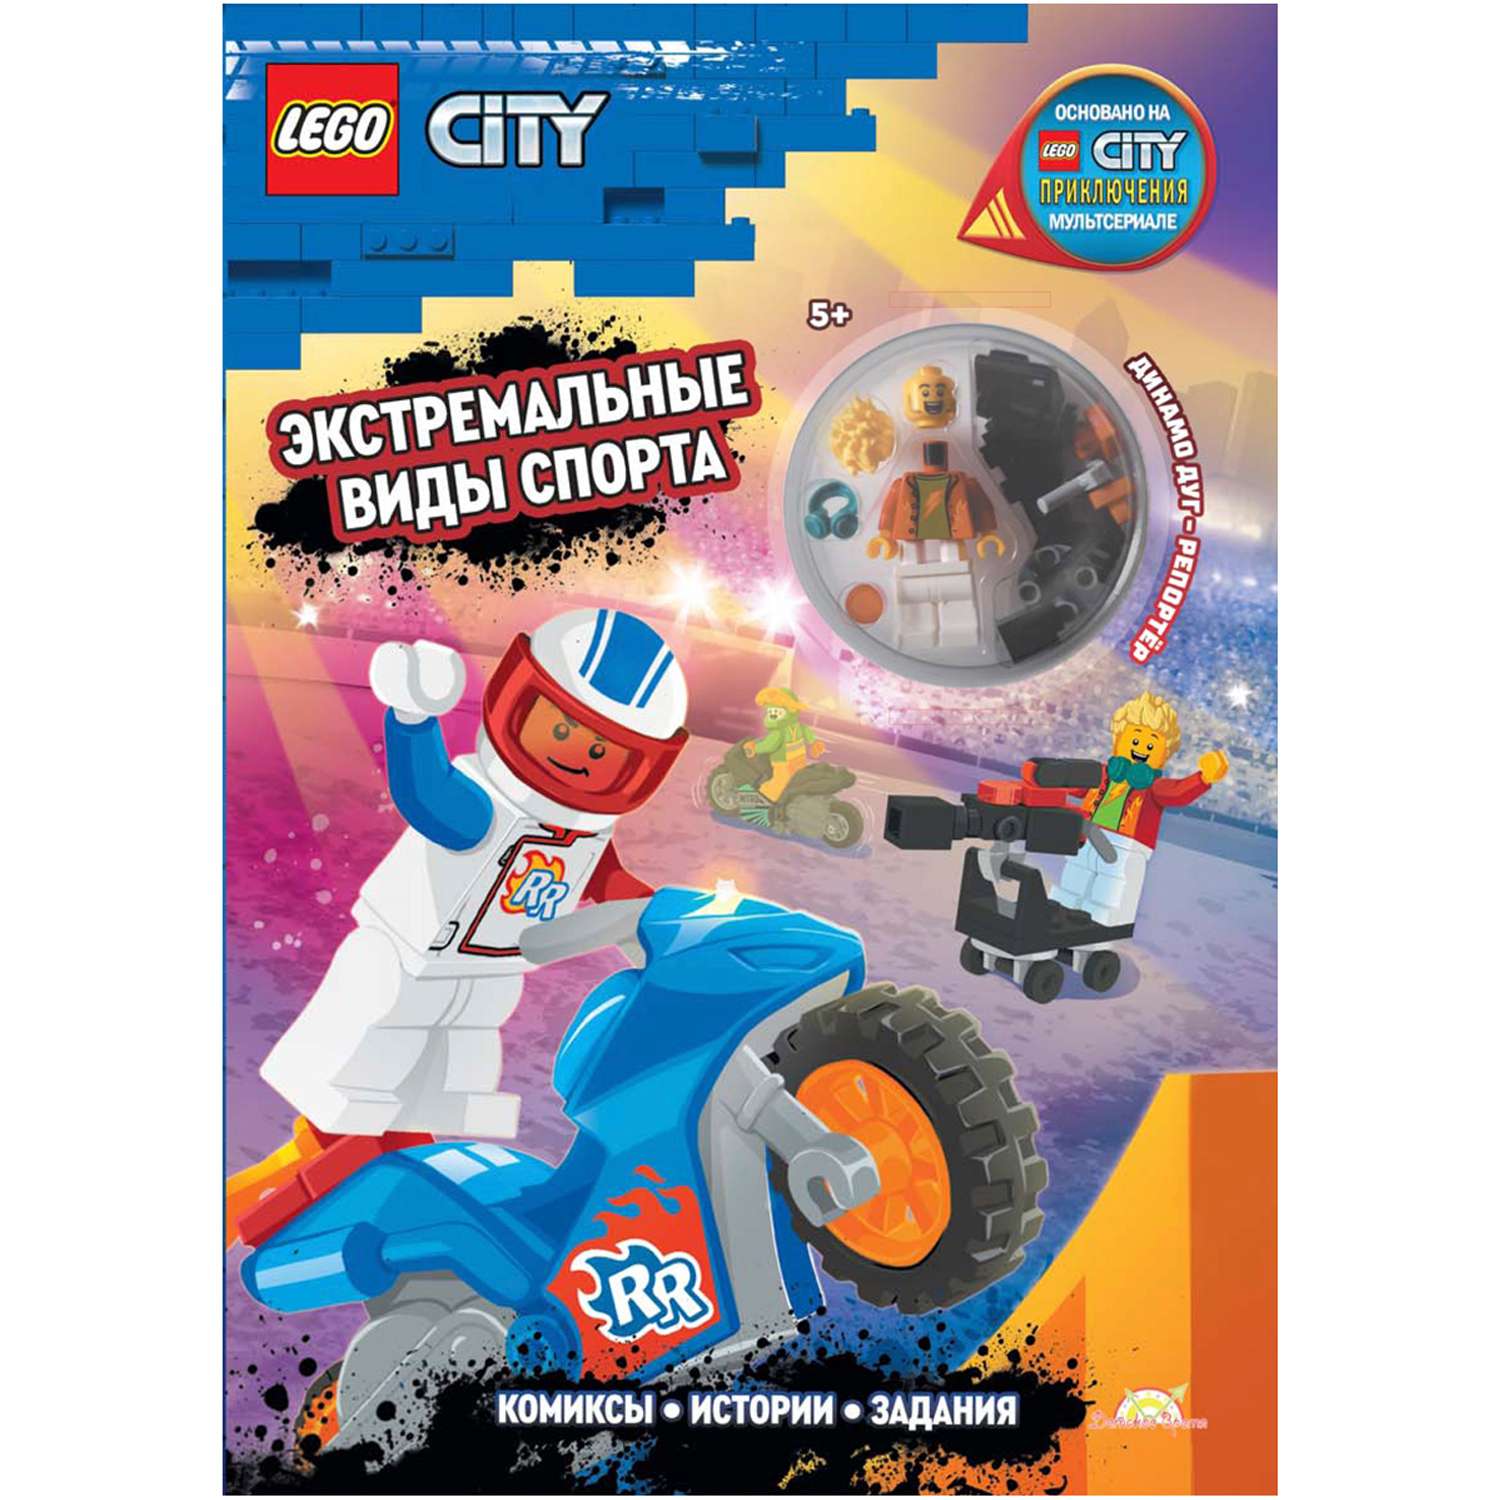 Книга LEGO с игрушкой City - фото 1